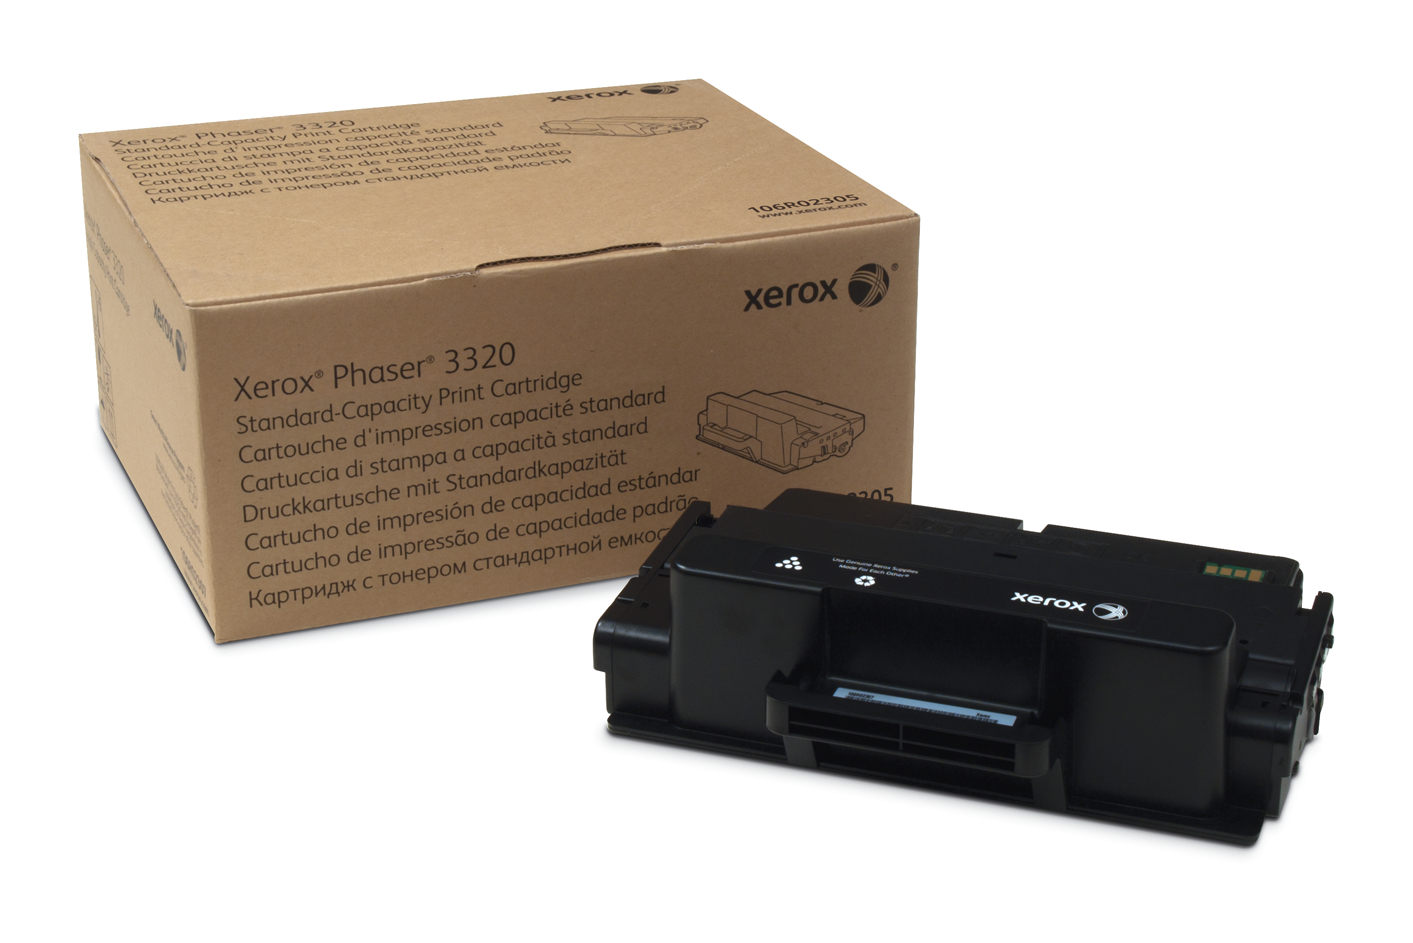 Phaser 3320 Cartuccia di stampa capacità standard (5000 pagine) 106R02305  Genuine Xerox Supplies